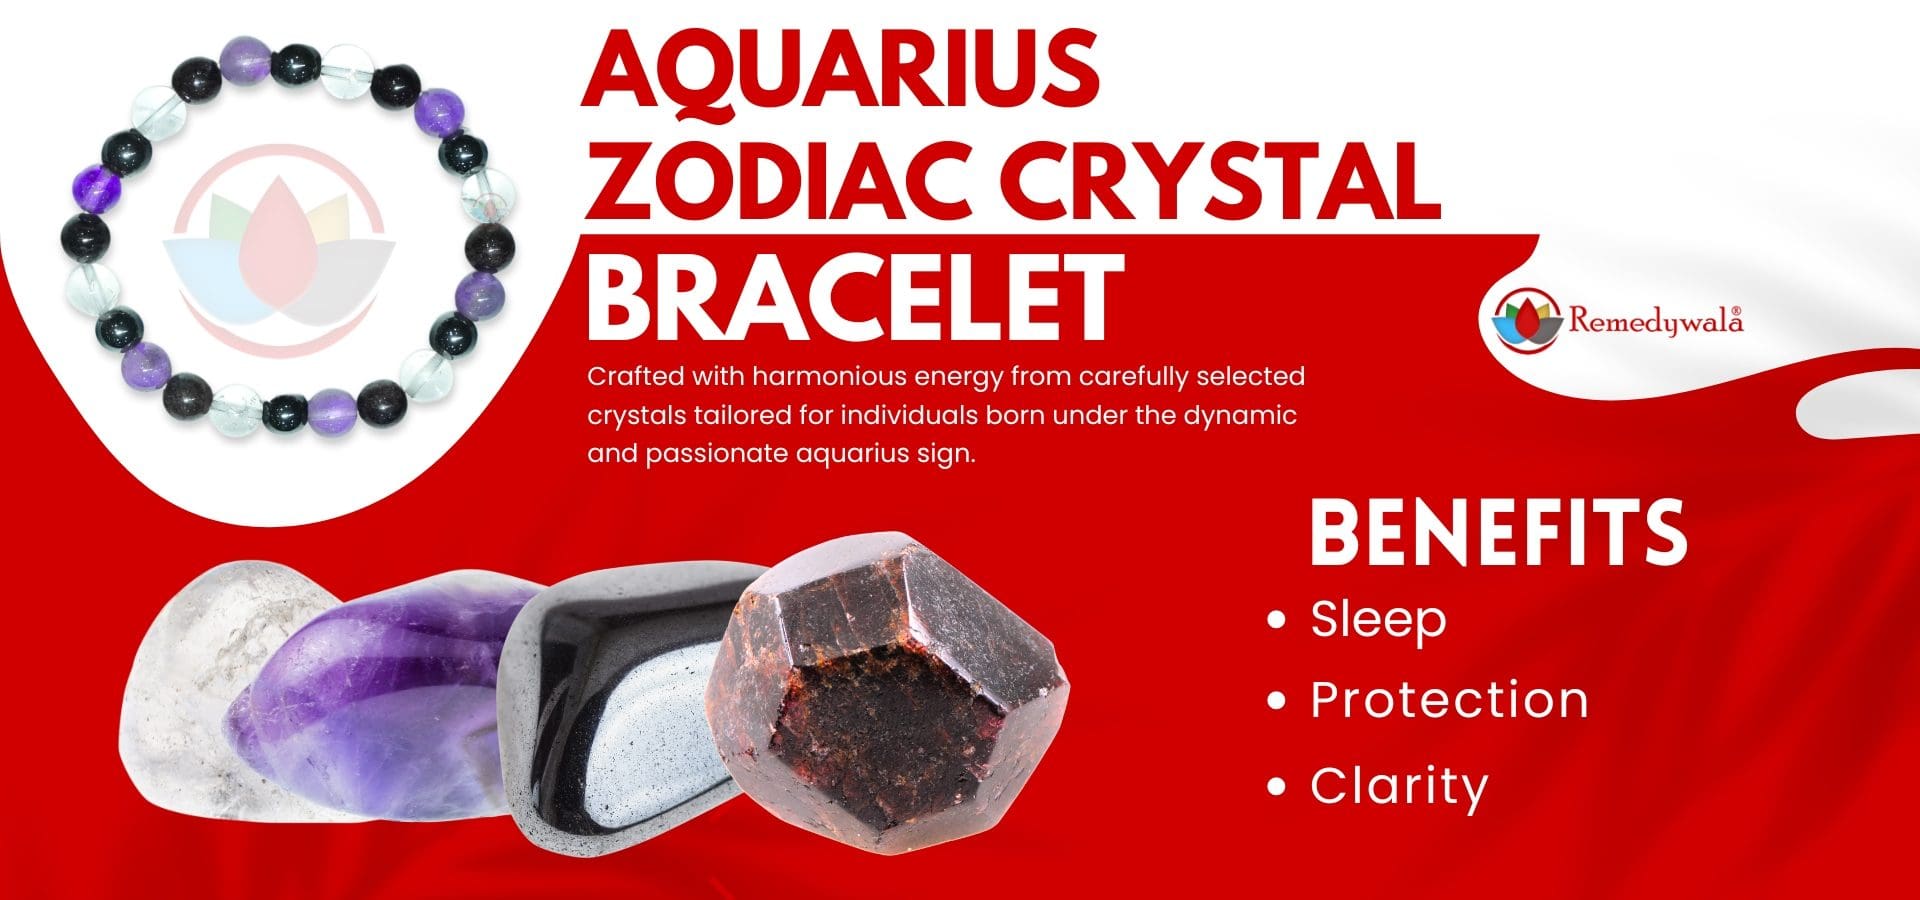 Aquarius Zodiac Crystal Bracelet